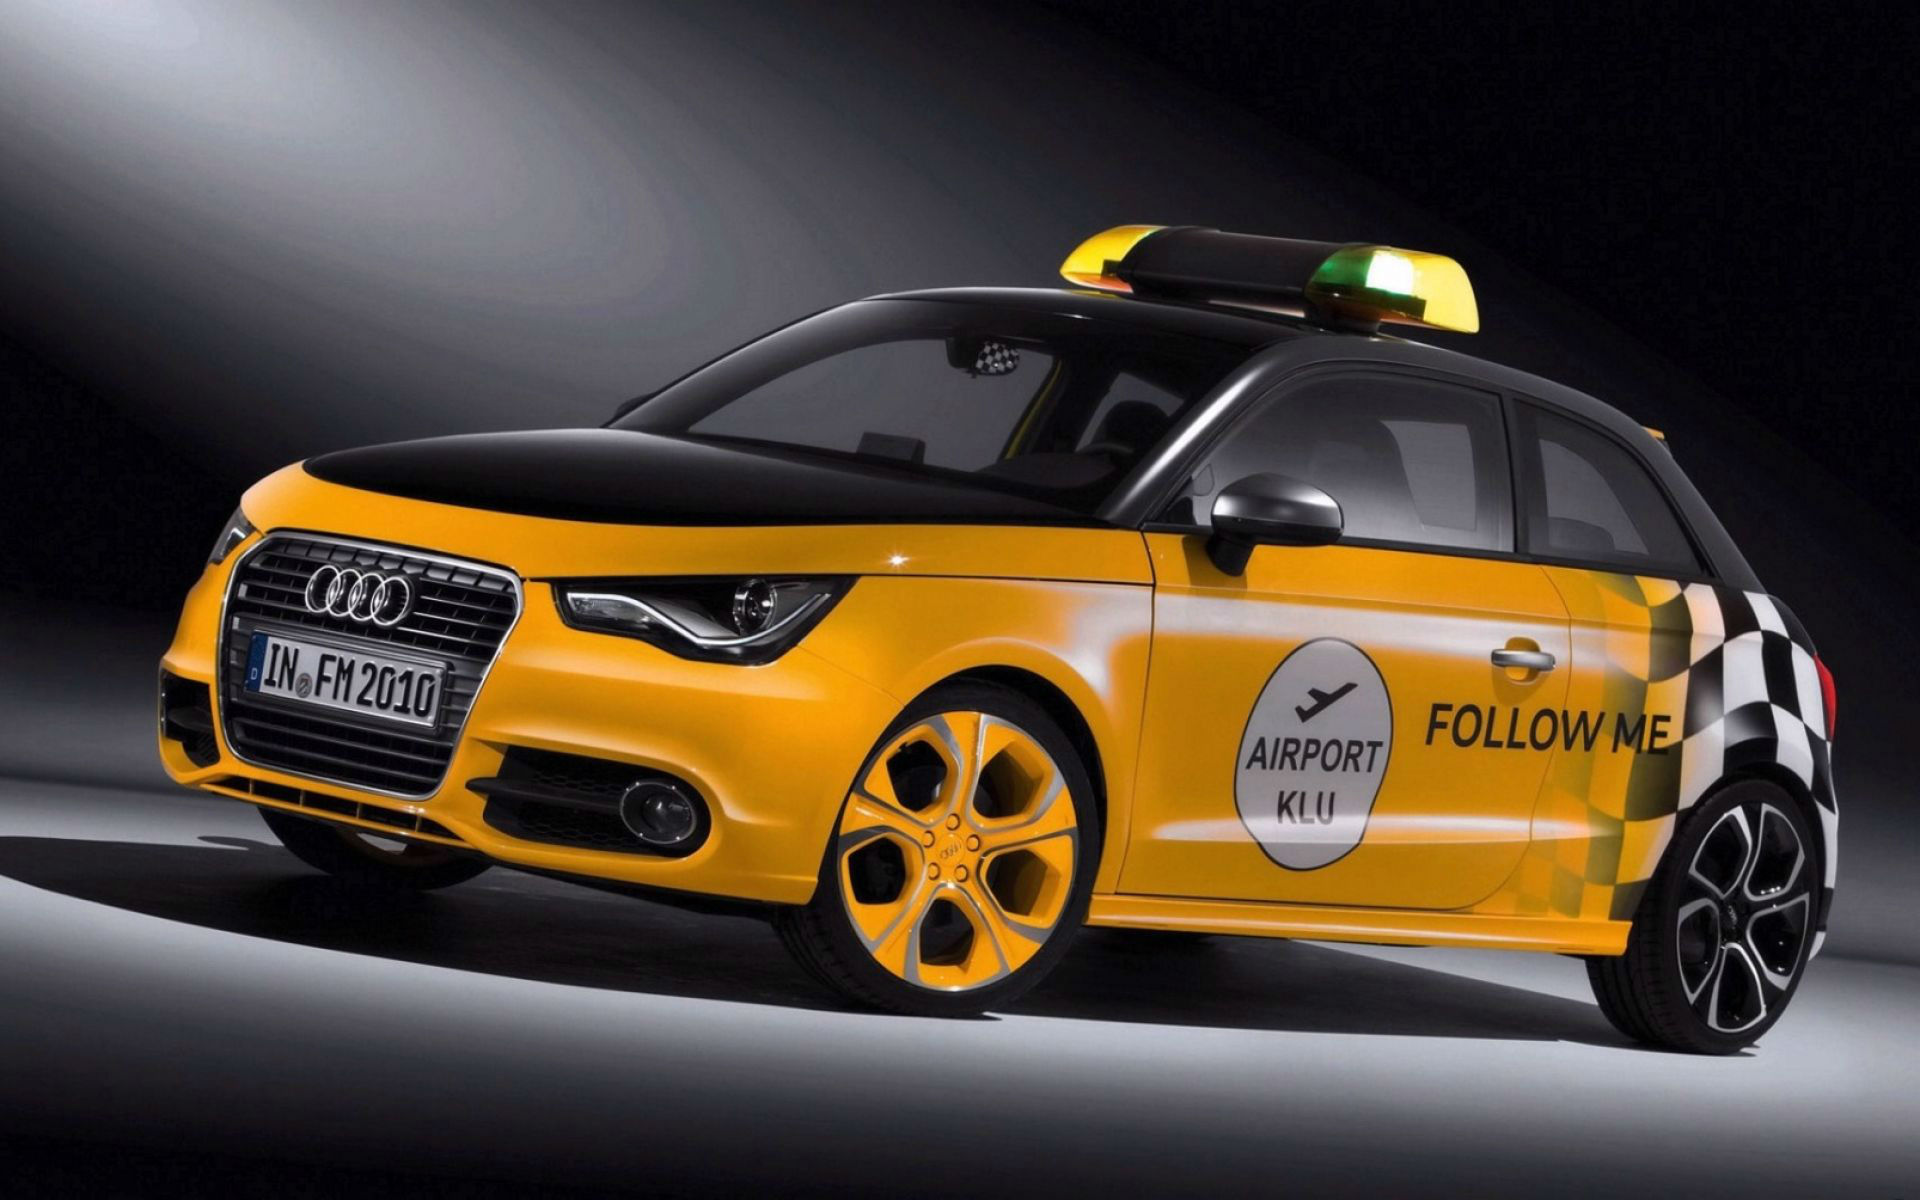 Yellow Audi Racing Car HD Wallpaper